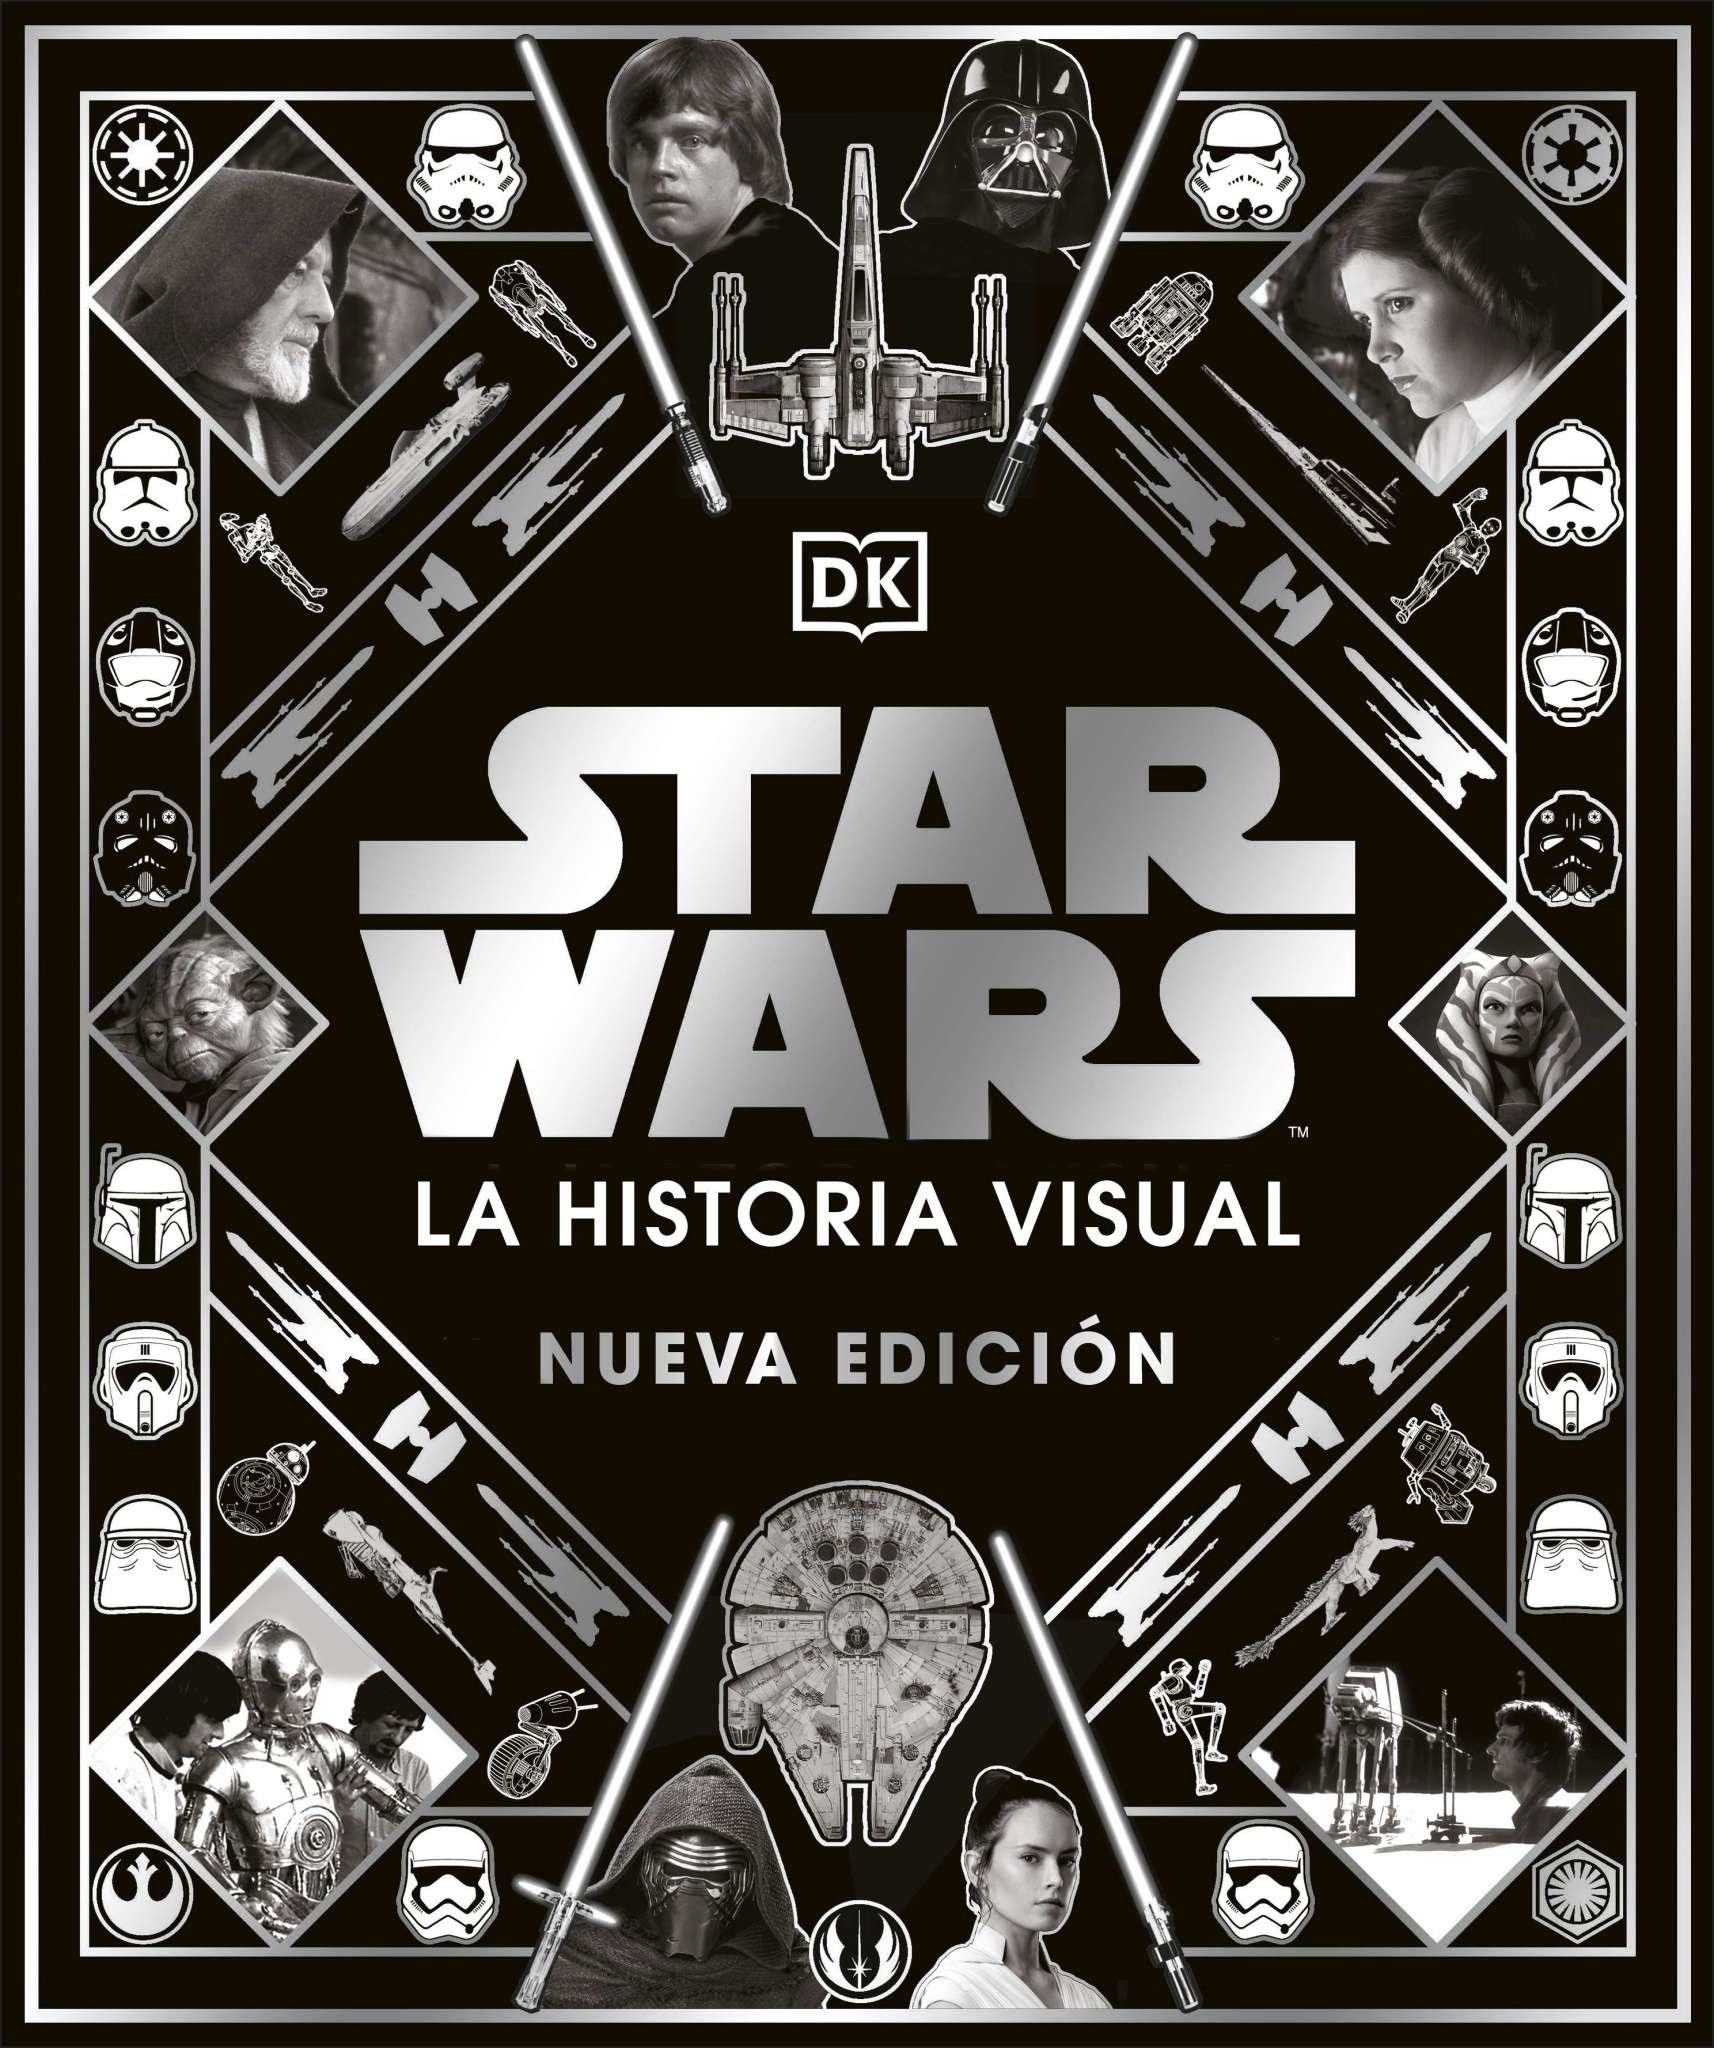 DK Star Wars - La historia visual, Nueva edicion